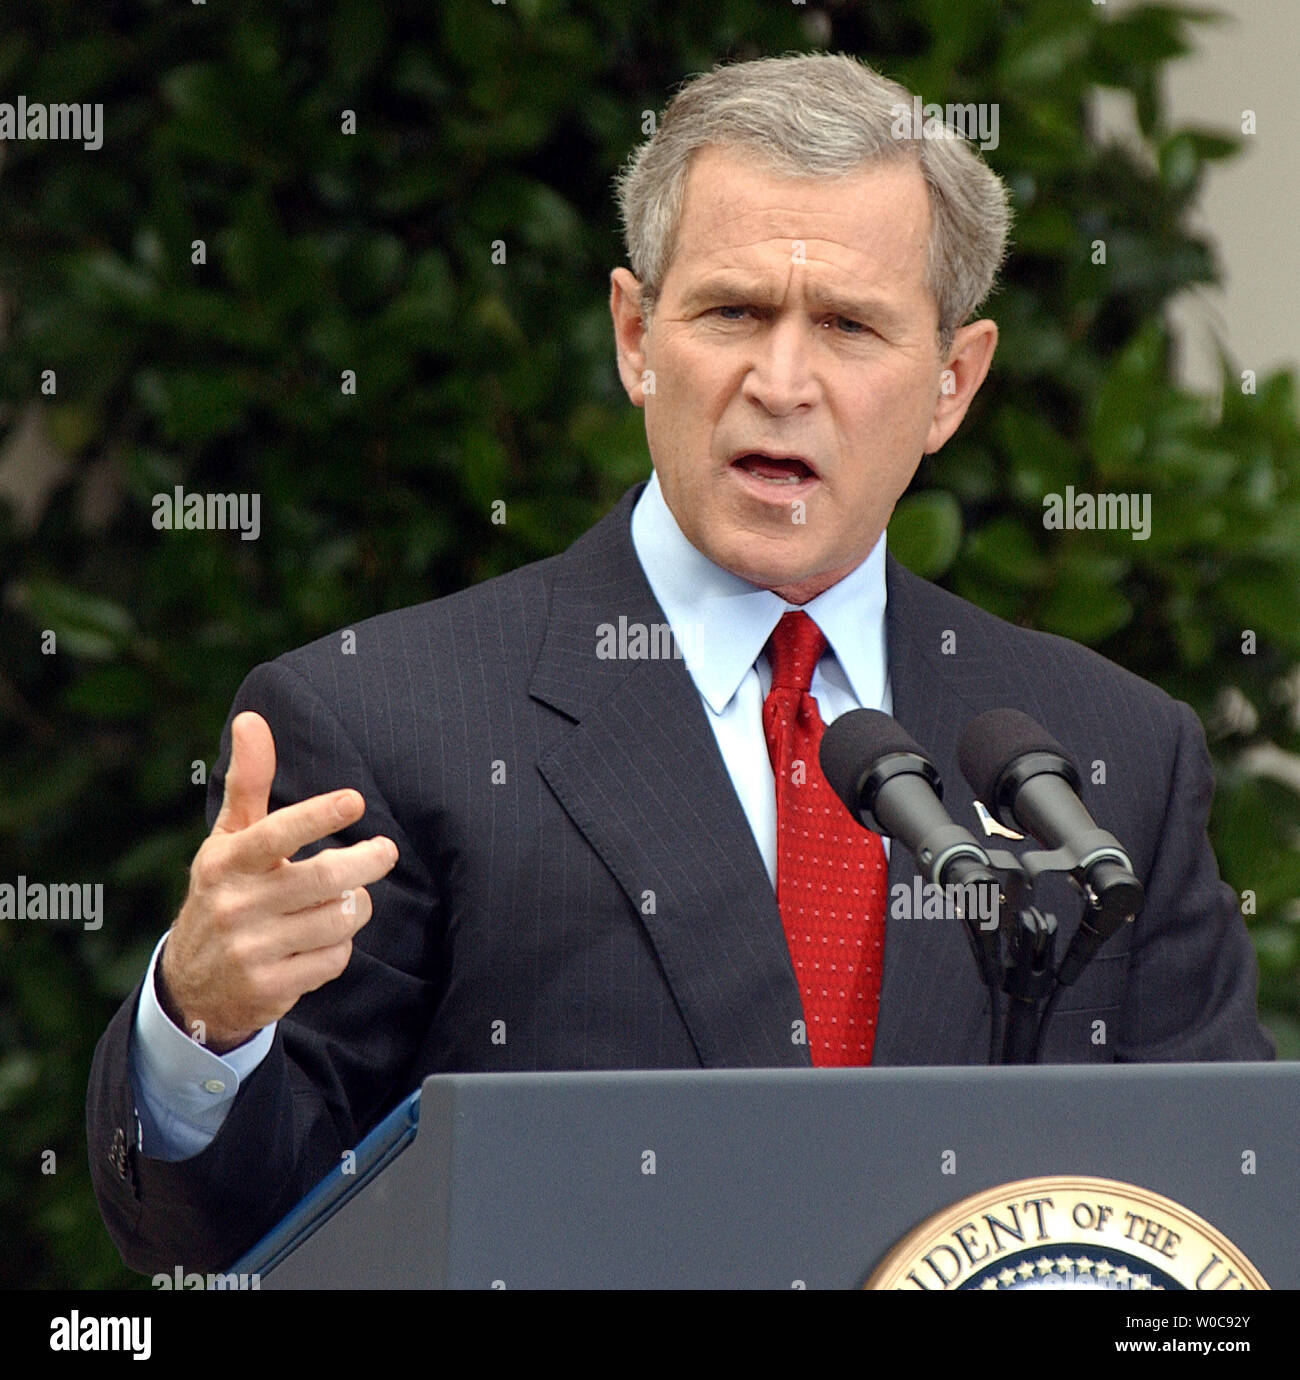 Präsident Bush spricht zu den Medien während einer Pressekonferenz am 28. Oktober 2003, im Rosengarten des Weißen Hauses. Bush die Schuld an der jüngsten Anschläge in Irak auf Baathistischen und ausländische Terroristen, aber sagte, daß Fortschritte gemacht werden. (UPI/Roger L. Wollenberg) Stockfoto